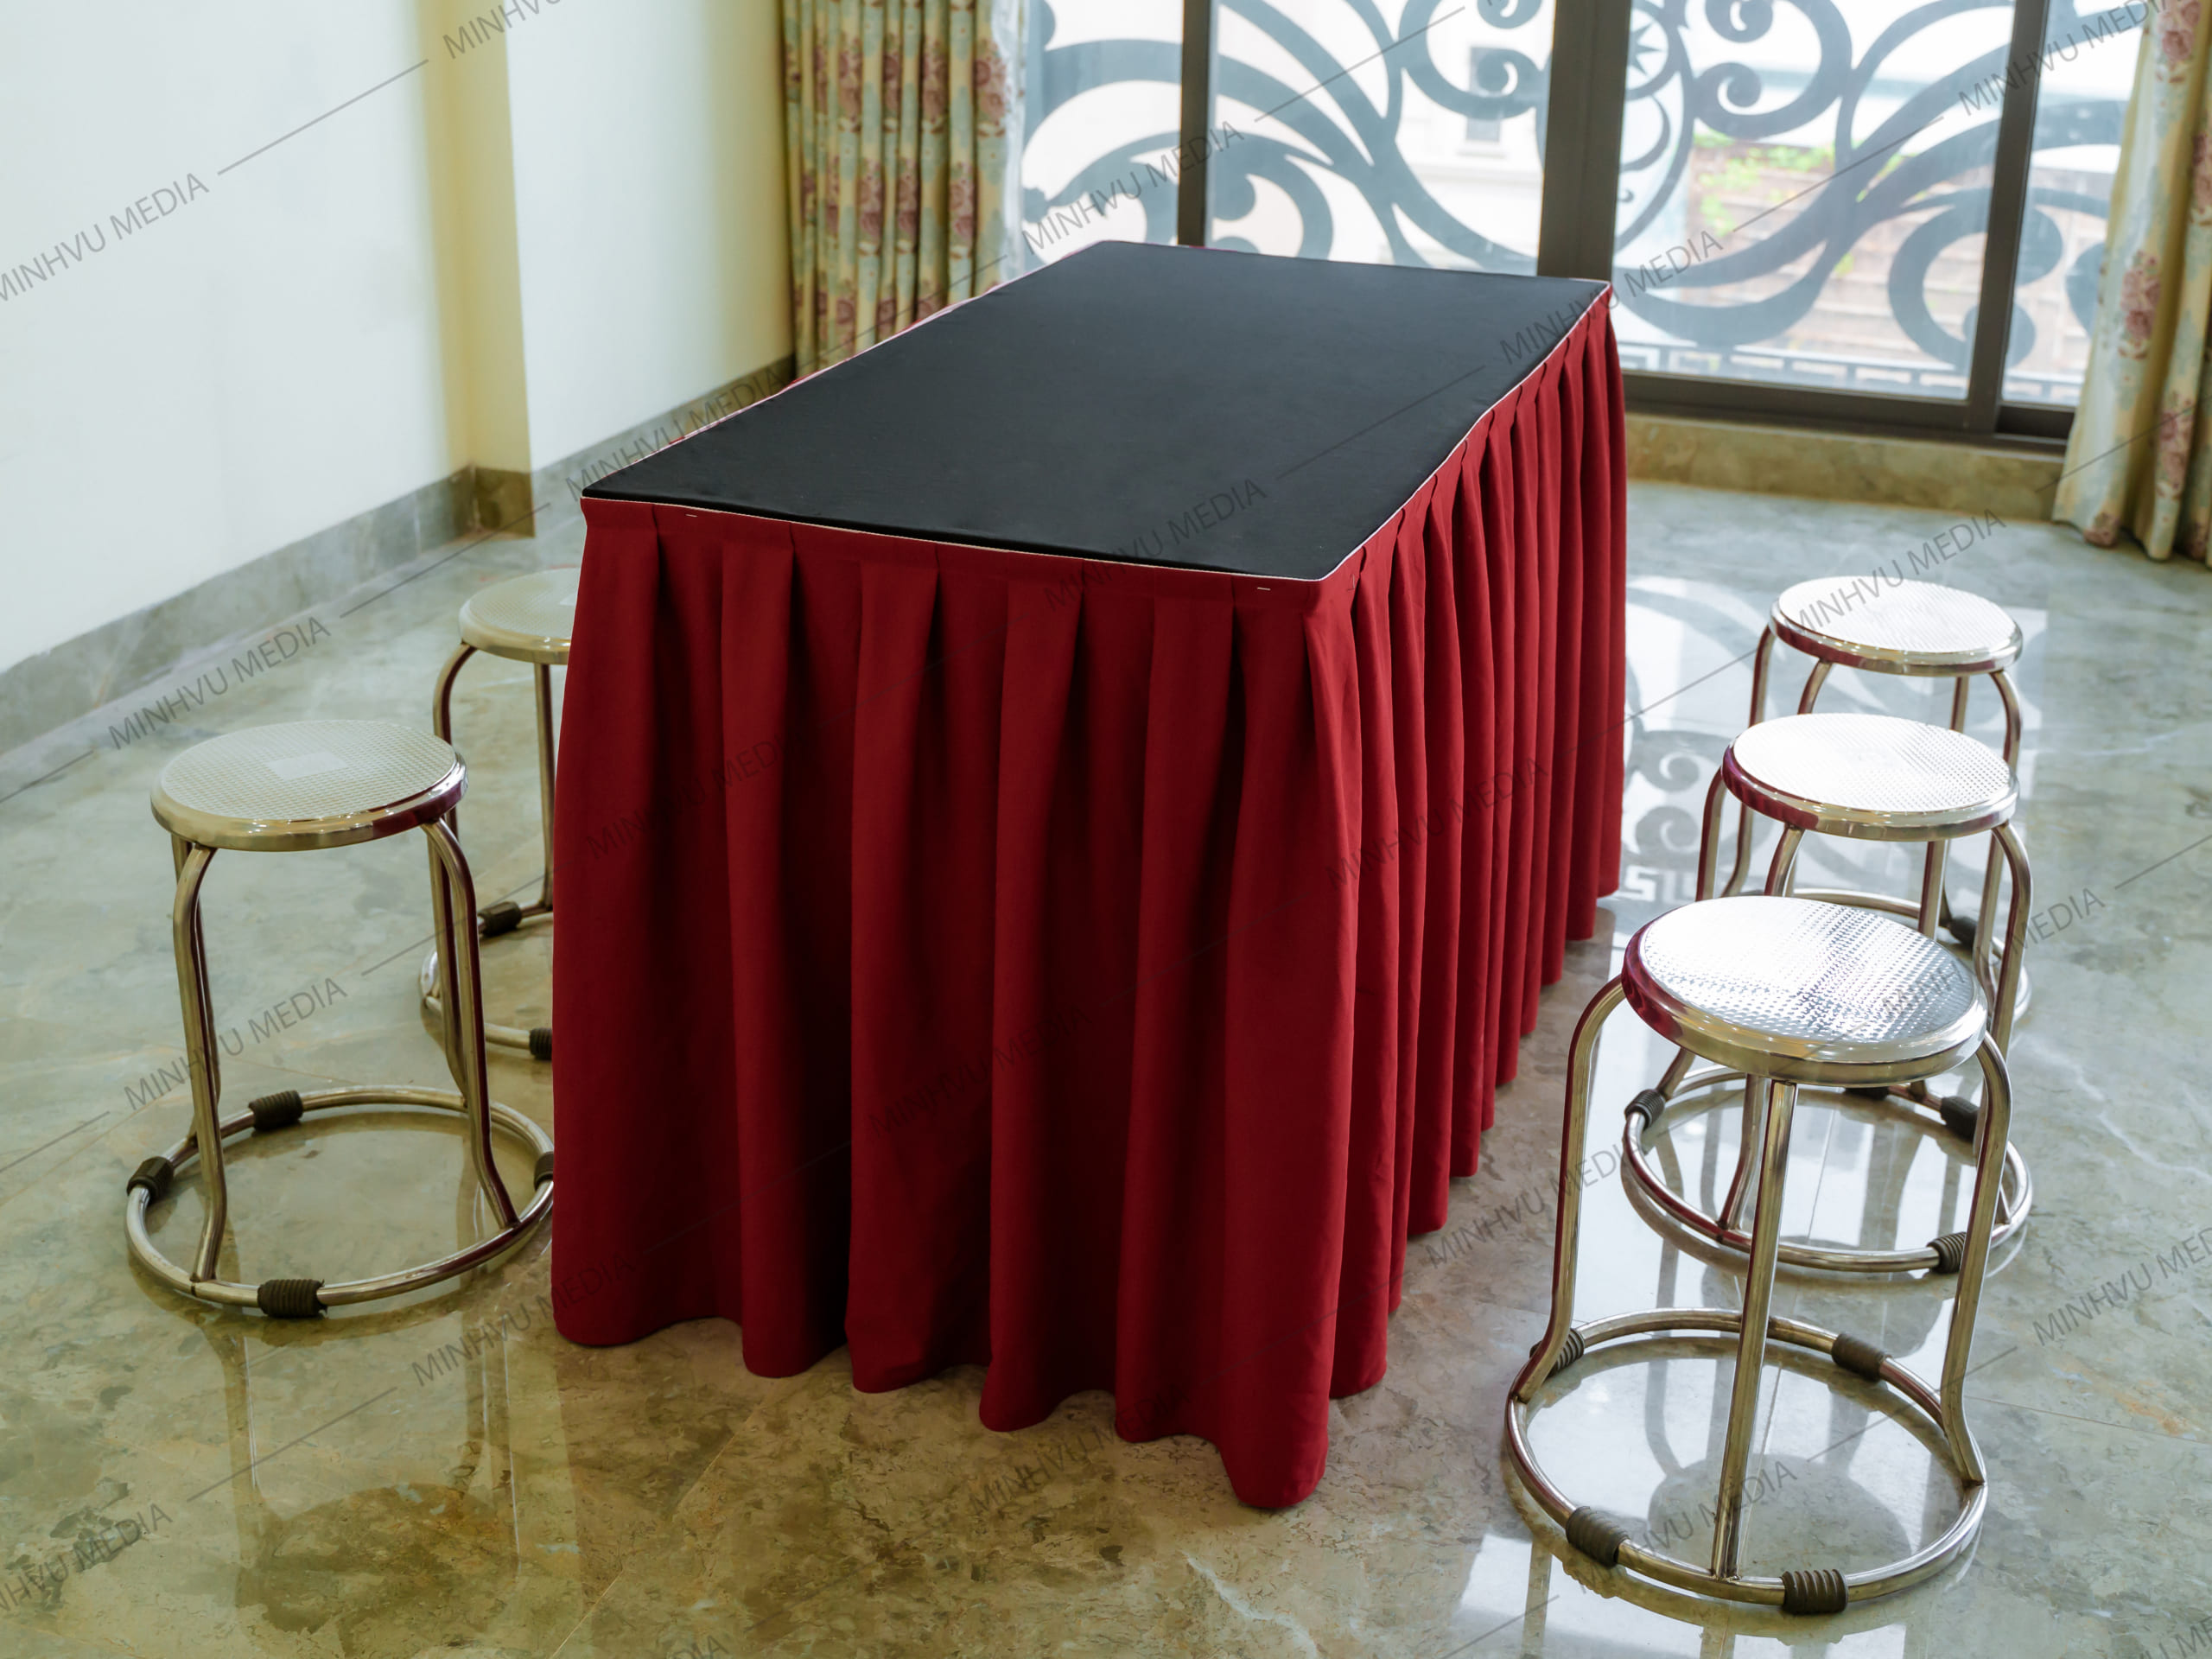 Bộ ghế inox kết hợp với bàn chữ nhật đen, quây đỏ